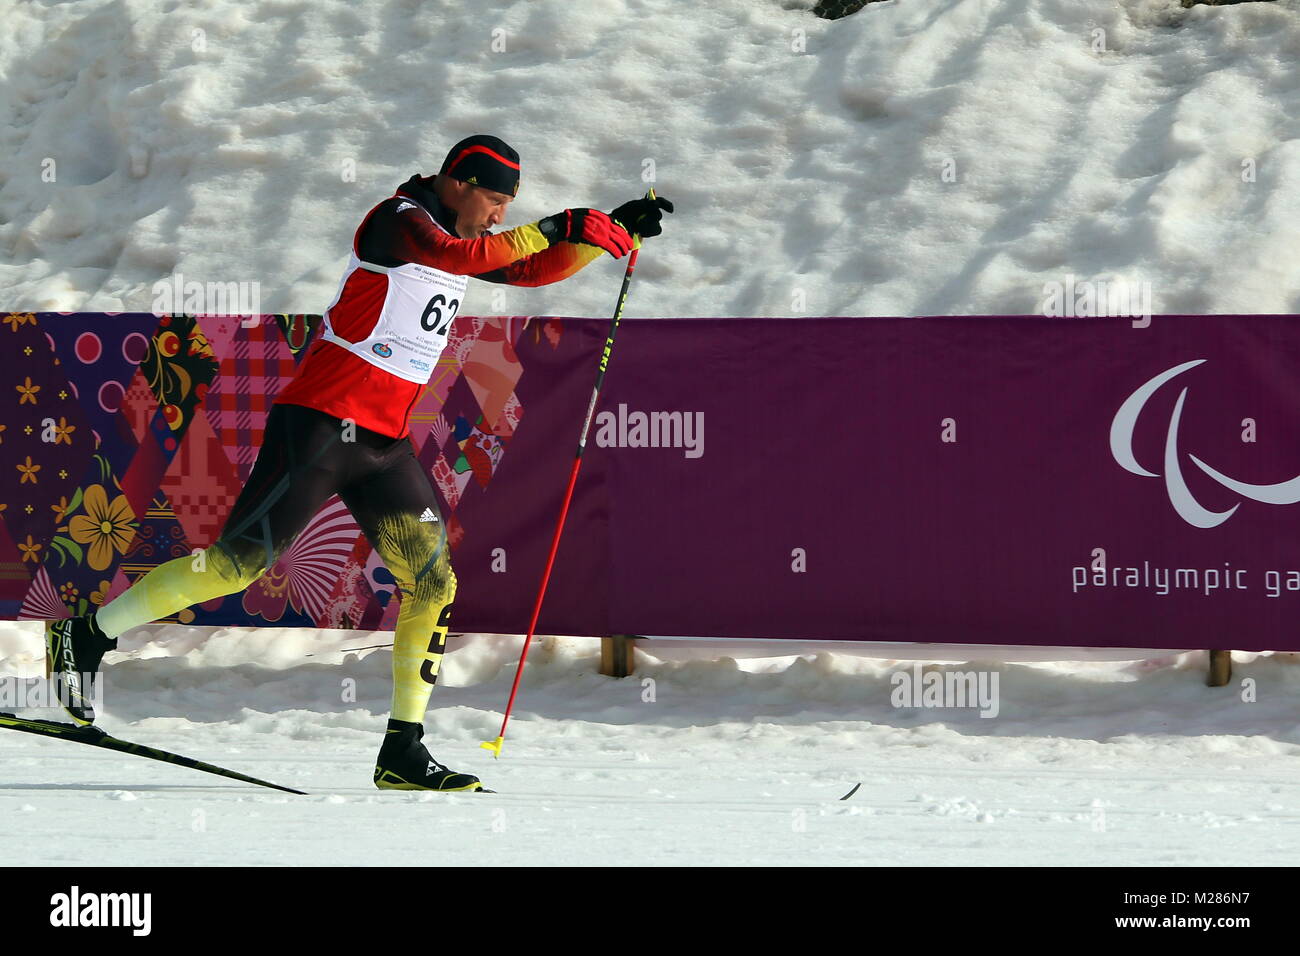 Tino UHLIG SV Mitteltal-Obertal - Zweites Training der deutschen Paralympischen Mannschaft in Sotschi  Paralympics Sotschi 2014 / Paralympic Winter Games Sochi 2014 Stock Photo